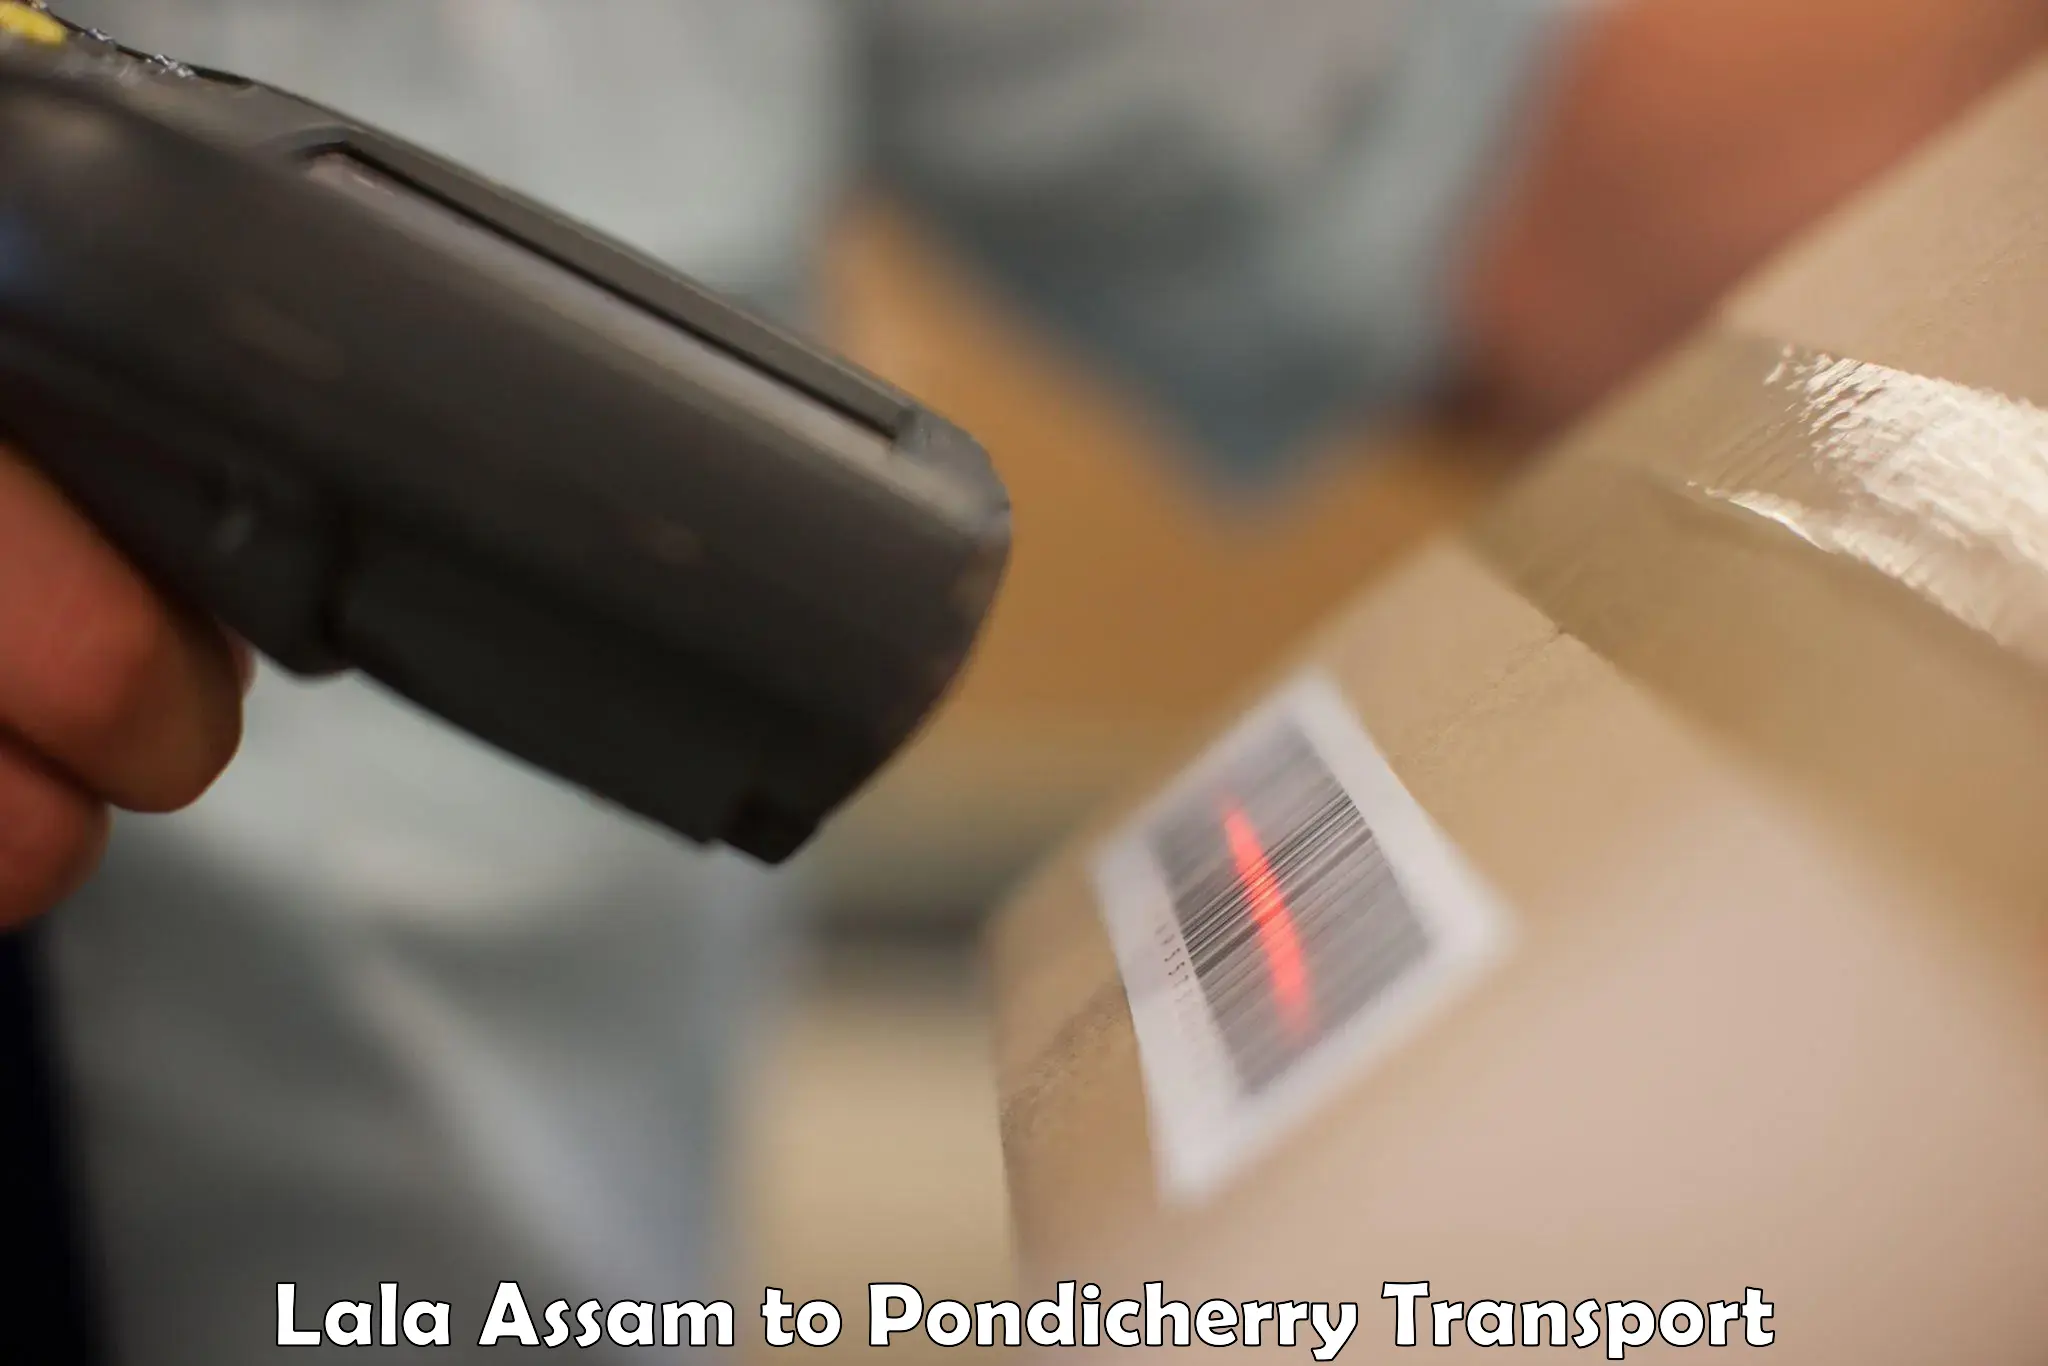 Delivery service Lala Assam to Pondicherry University